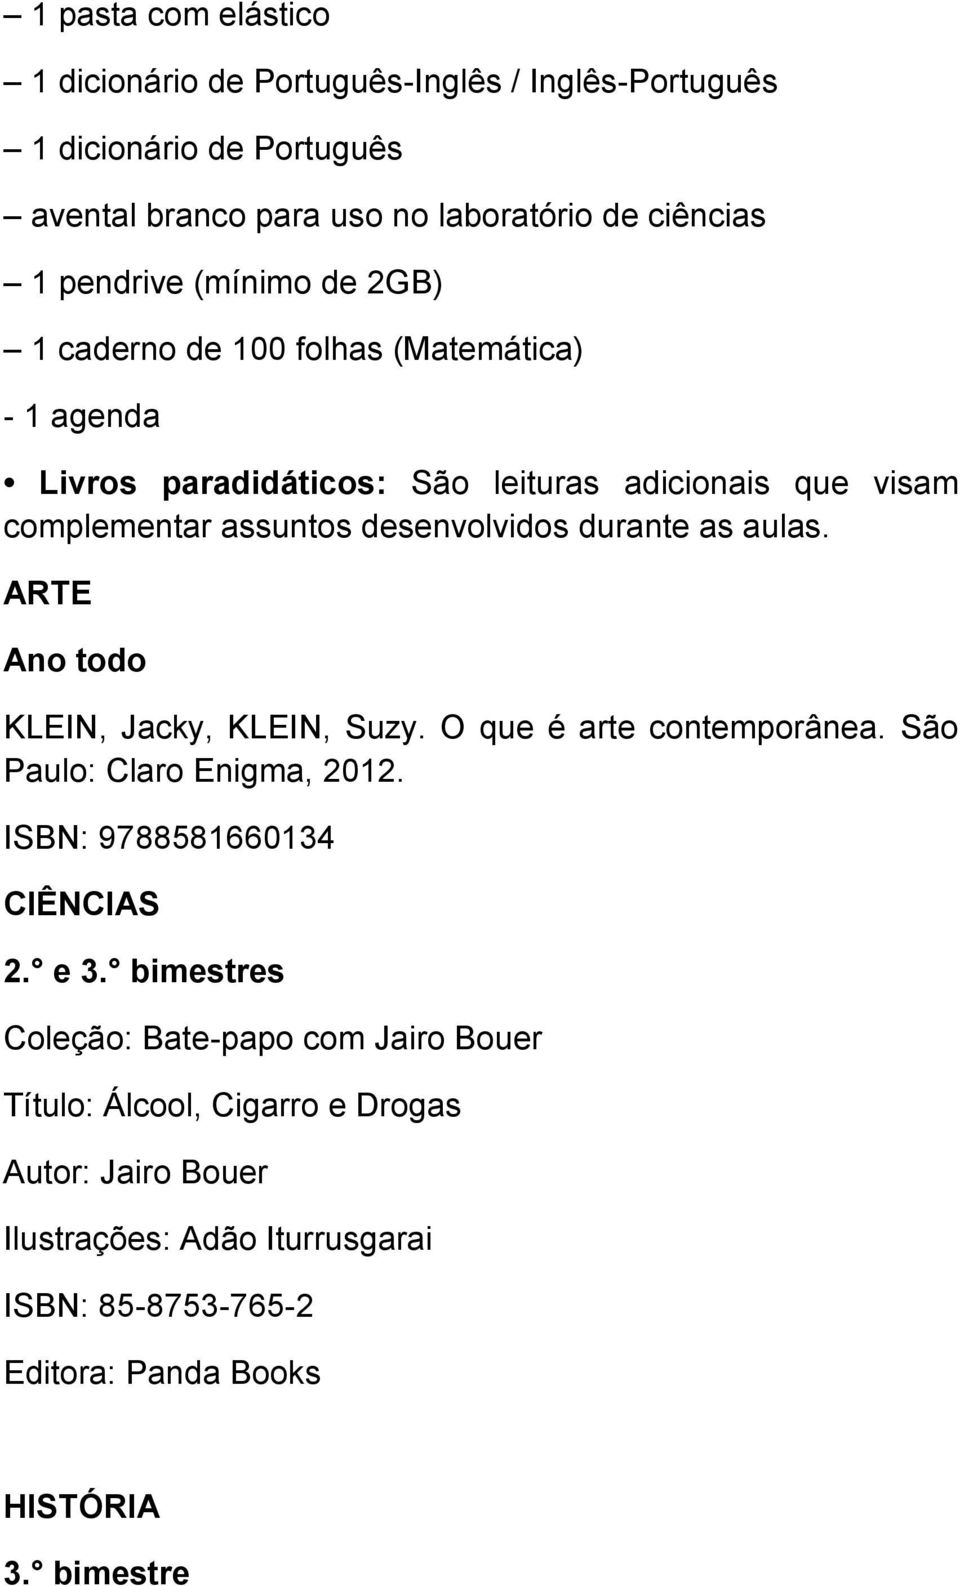 as aulas. ARTE Ano todo KLEIN, Jacky, KLEIN, Suzy. O que é arte contemporânea. São Paulo: Claro Enigma, 2012. ISBN: 9788581660134 CIÊNCIAS 2. e 3.